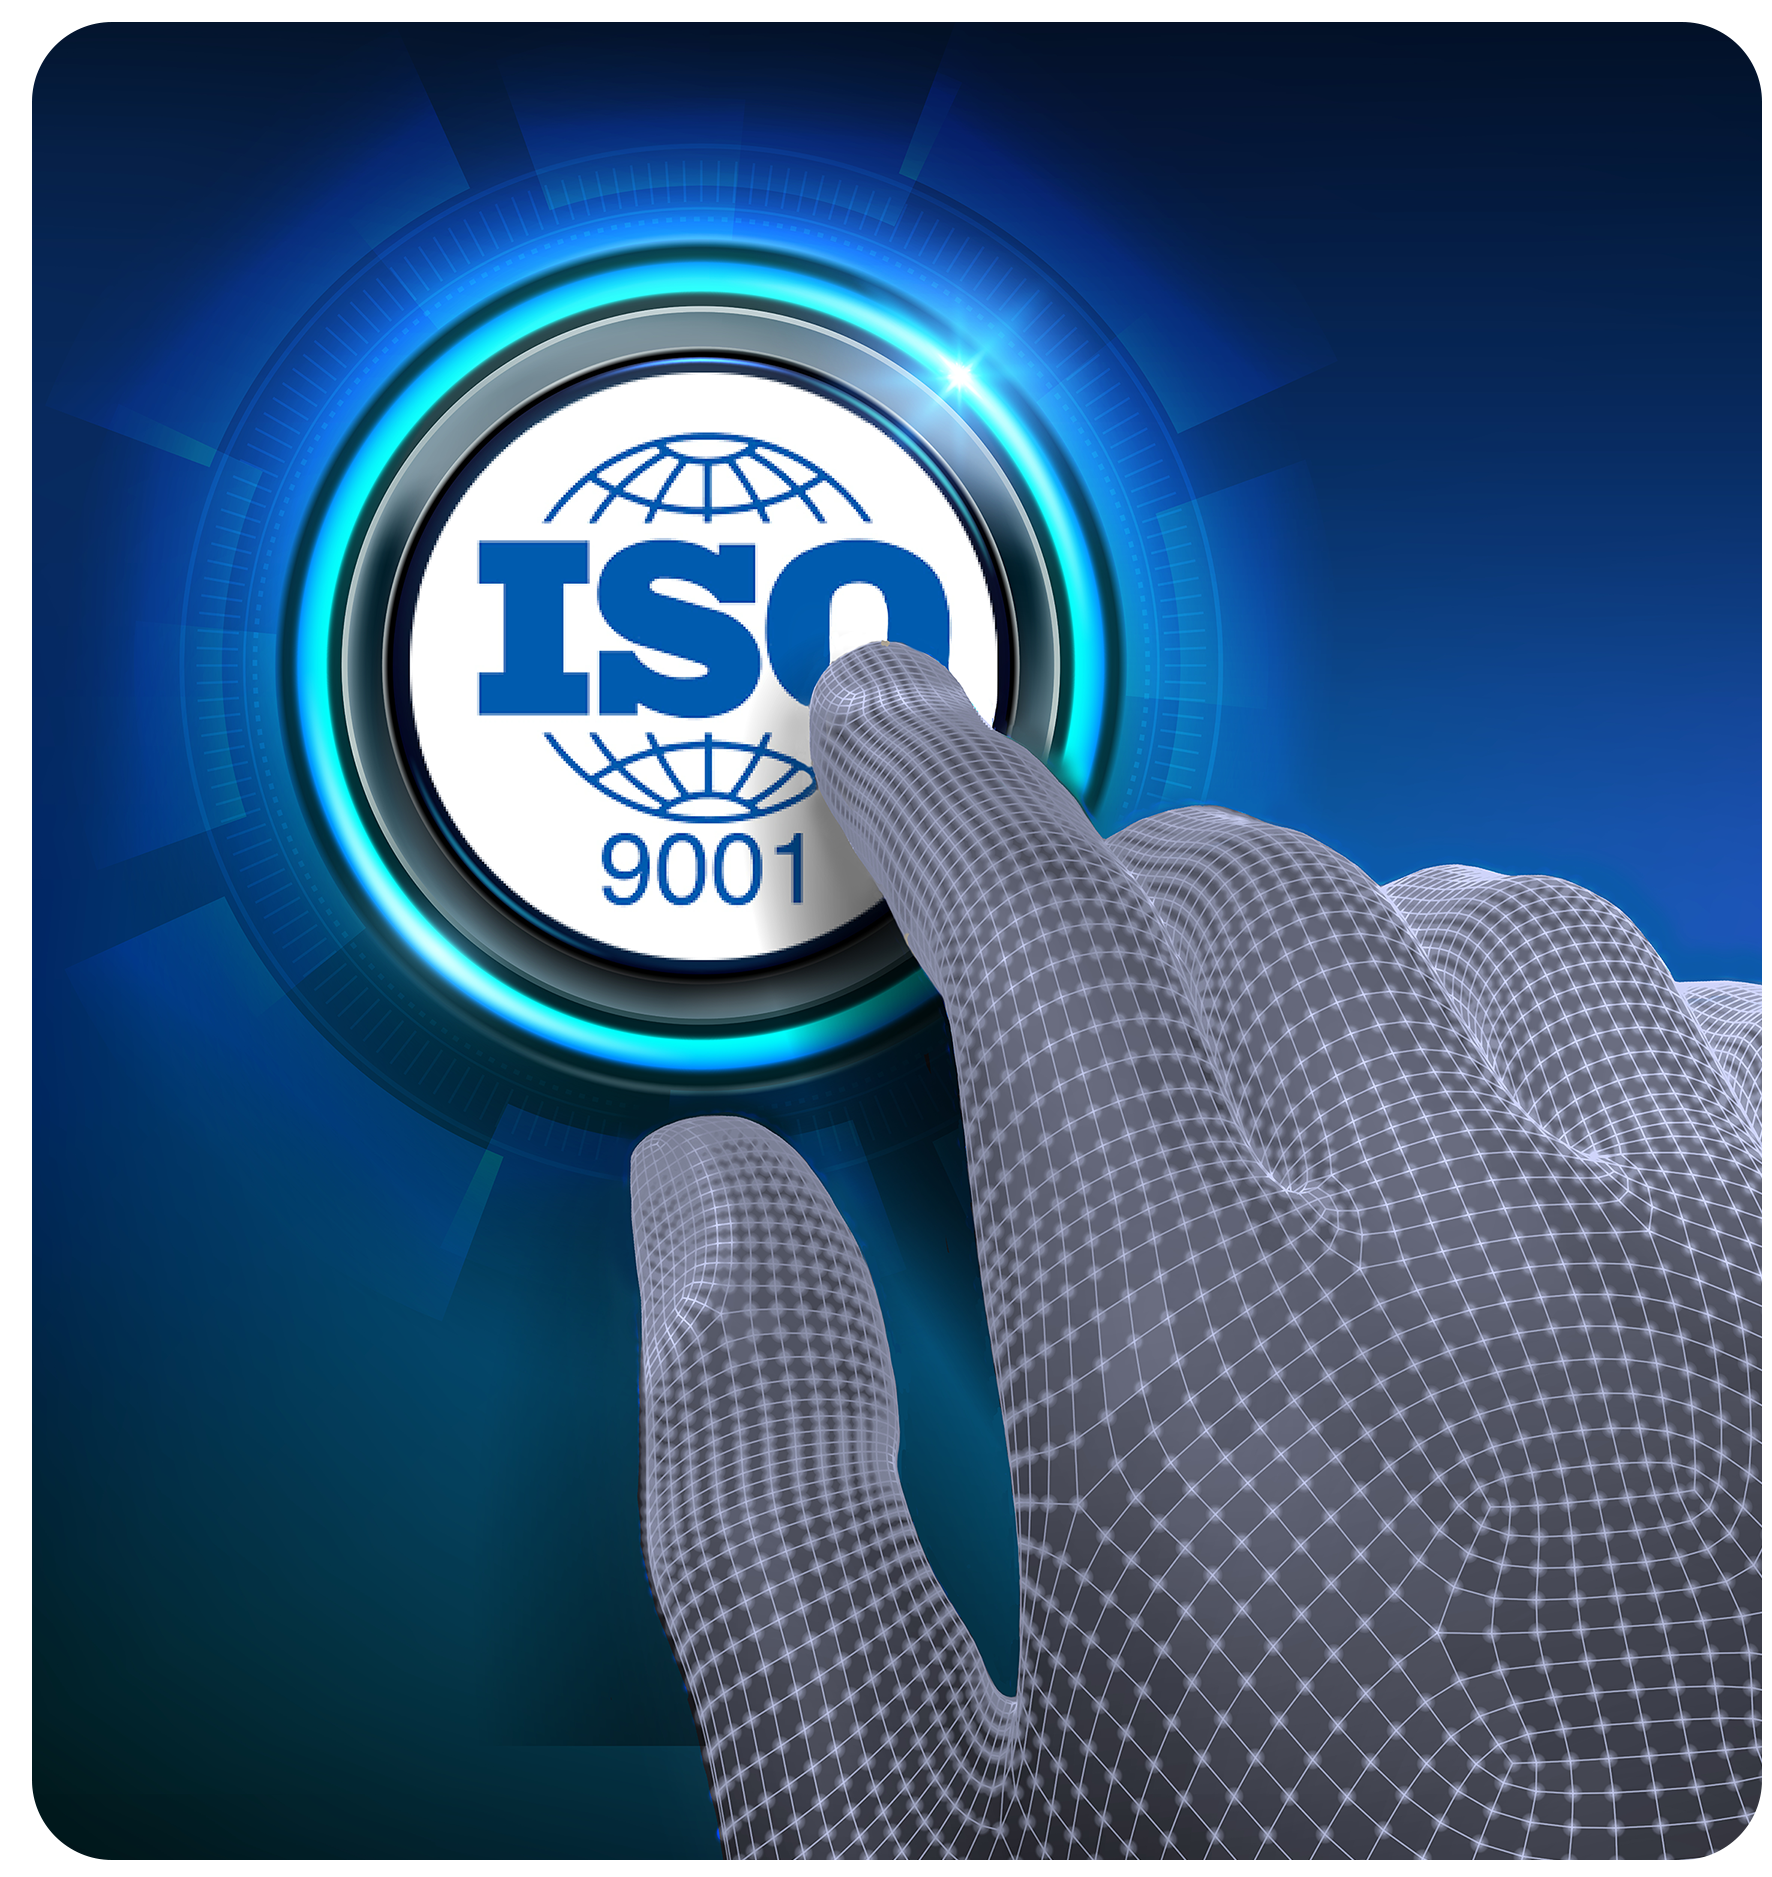 Certificazione ISO 9001 - Immagine astratta